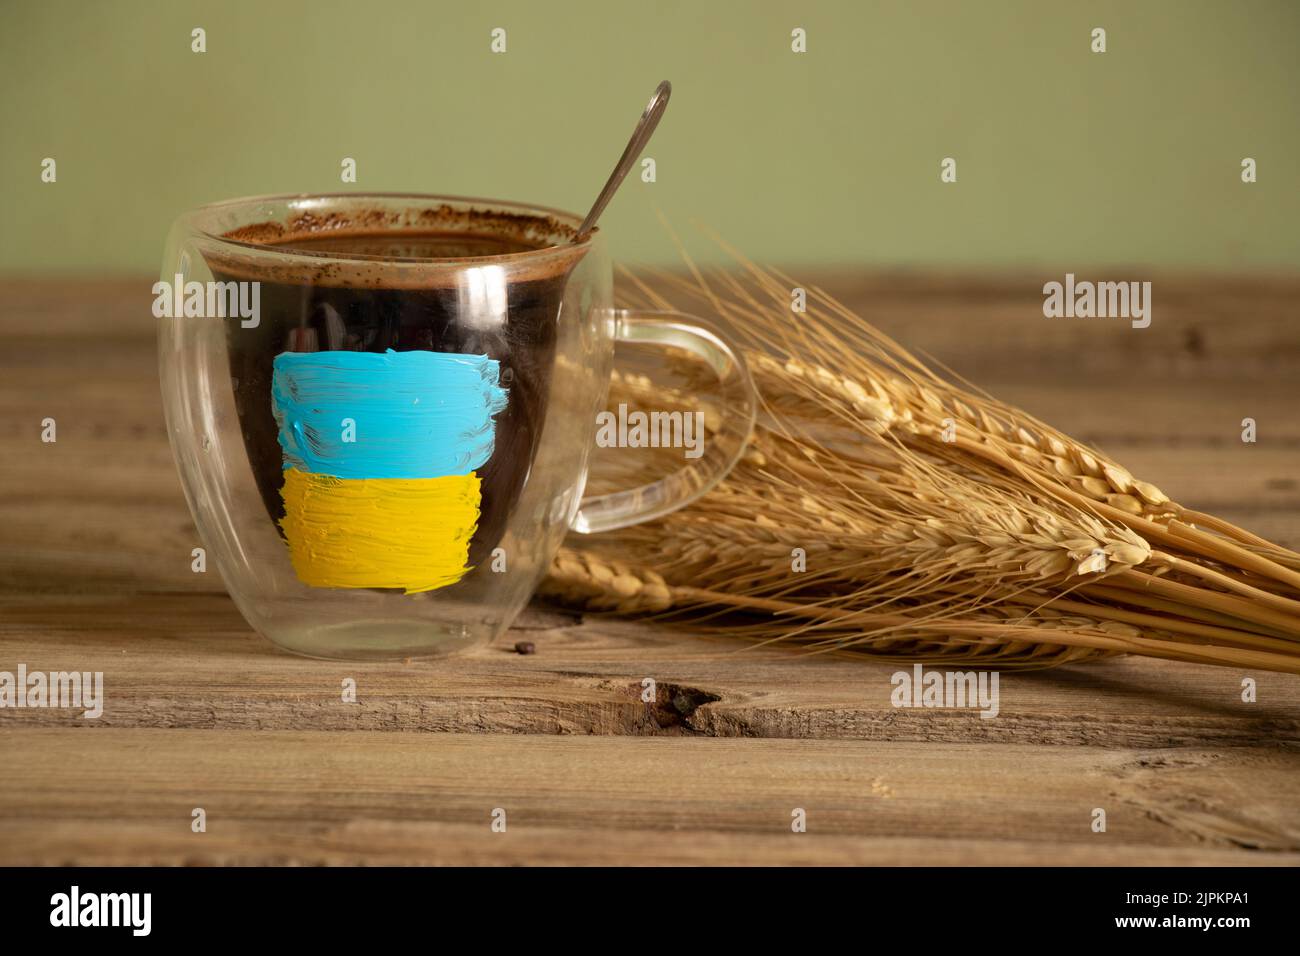 Die gelb-blaue Flagge der Ukraine ist auf einer weißen Tasse mit Kaffee auf dem Tisch in der Nähe des Weizenfeldes in der Ukraine gemalt, den Krieg zu stoppen Stockfoto